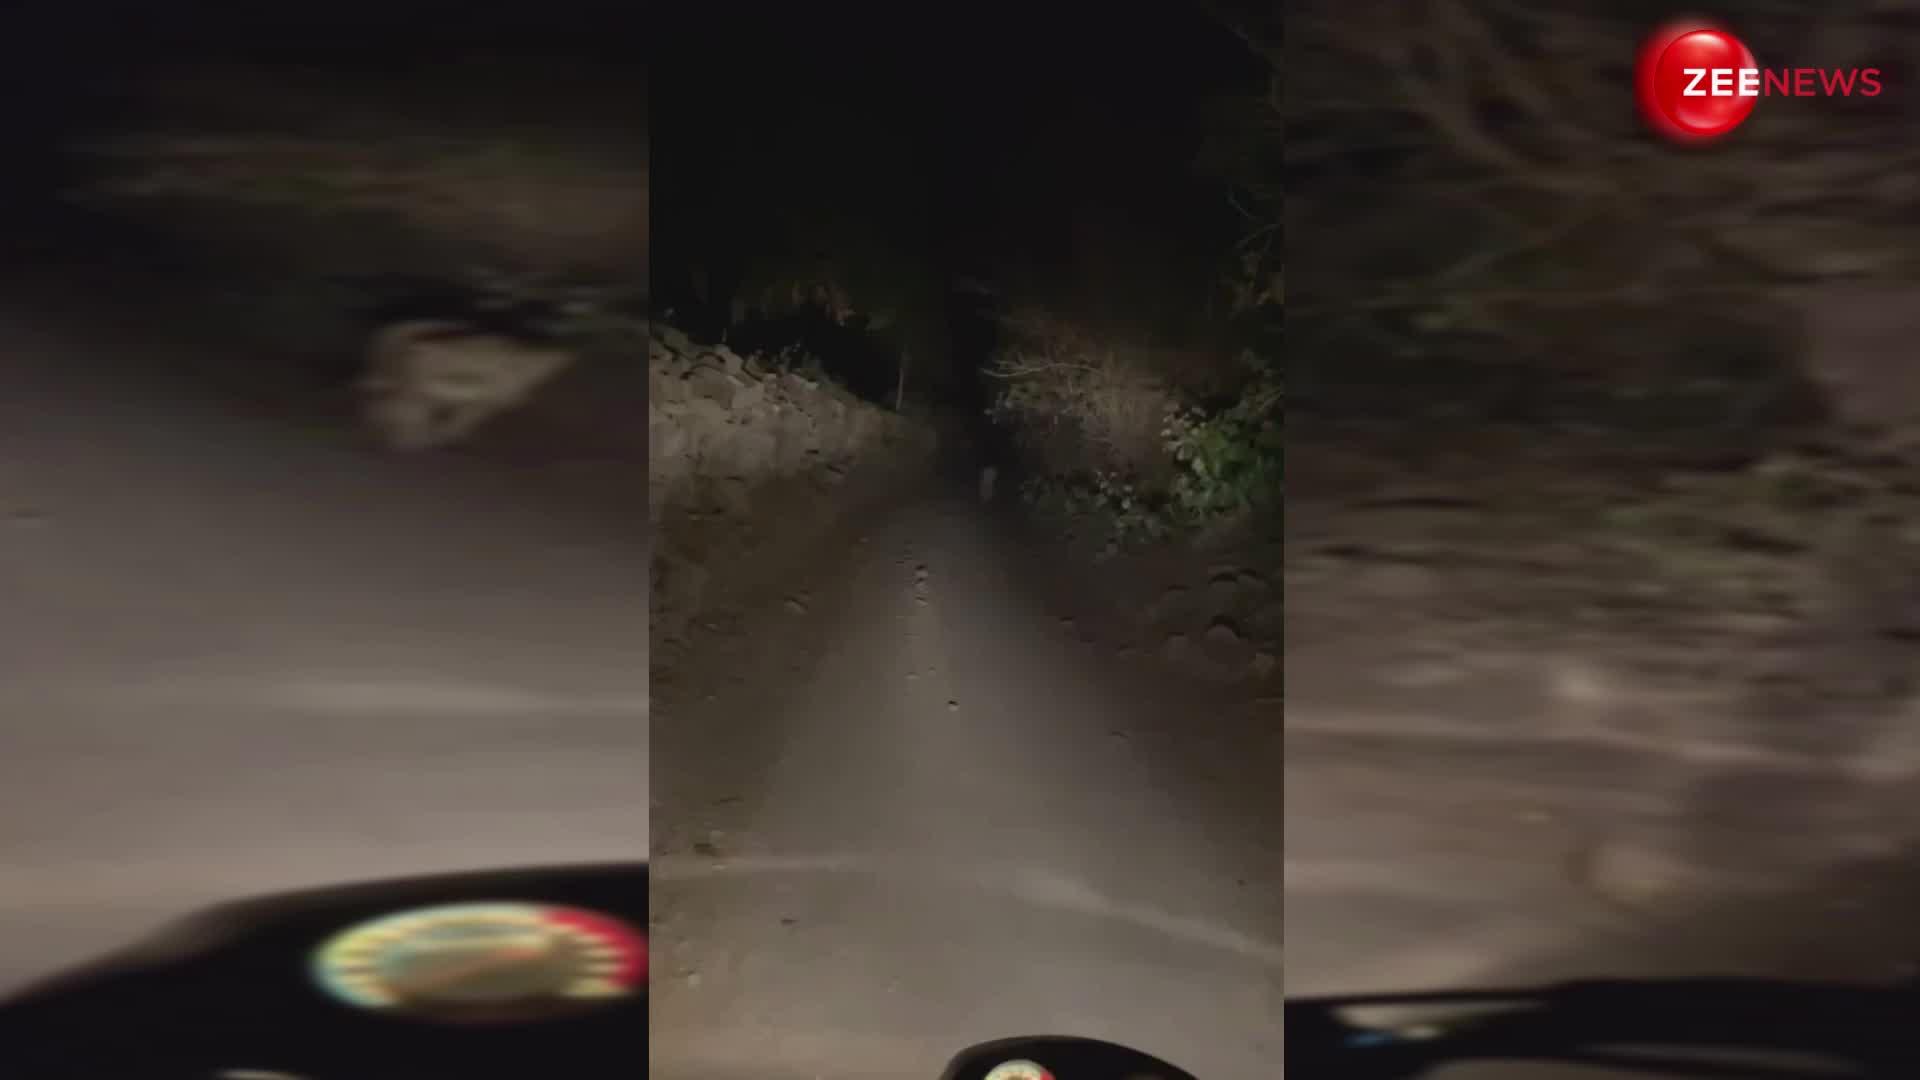 जंगल के कच्चे रास्ते से गुजर रहे थे बाइक सवार तभी अचानक आ धमका शेर, पूरा वीडियो देख लोगों की हालत हुई खराब